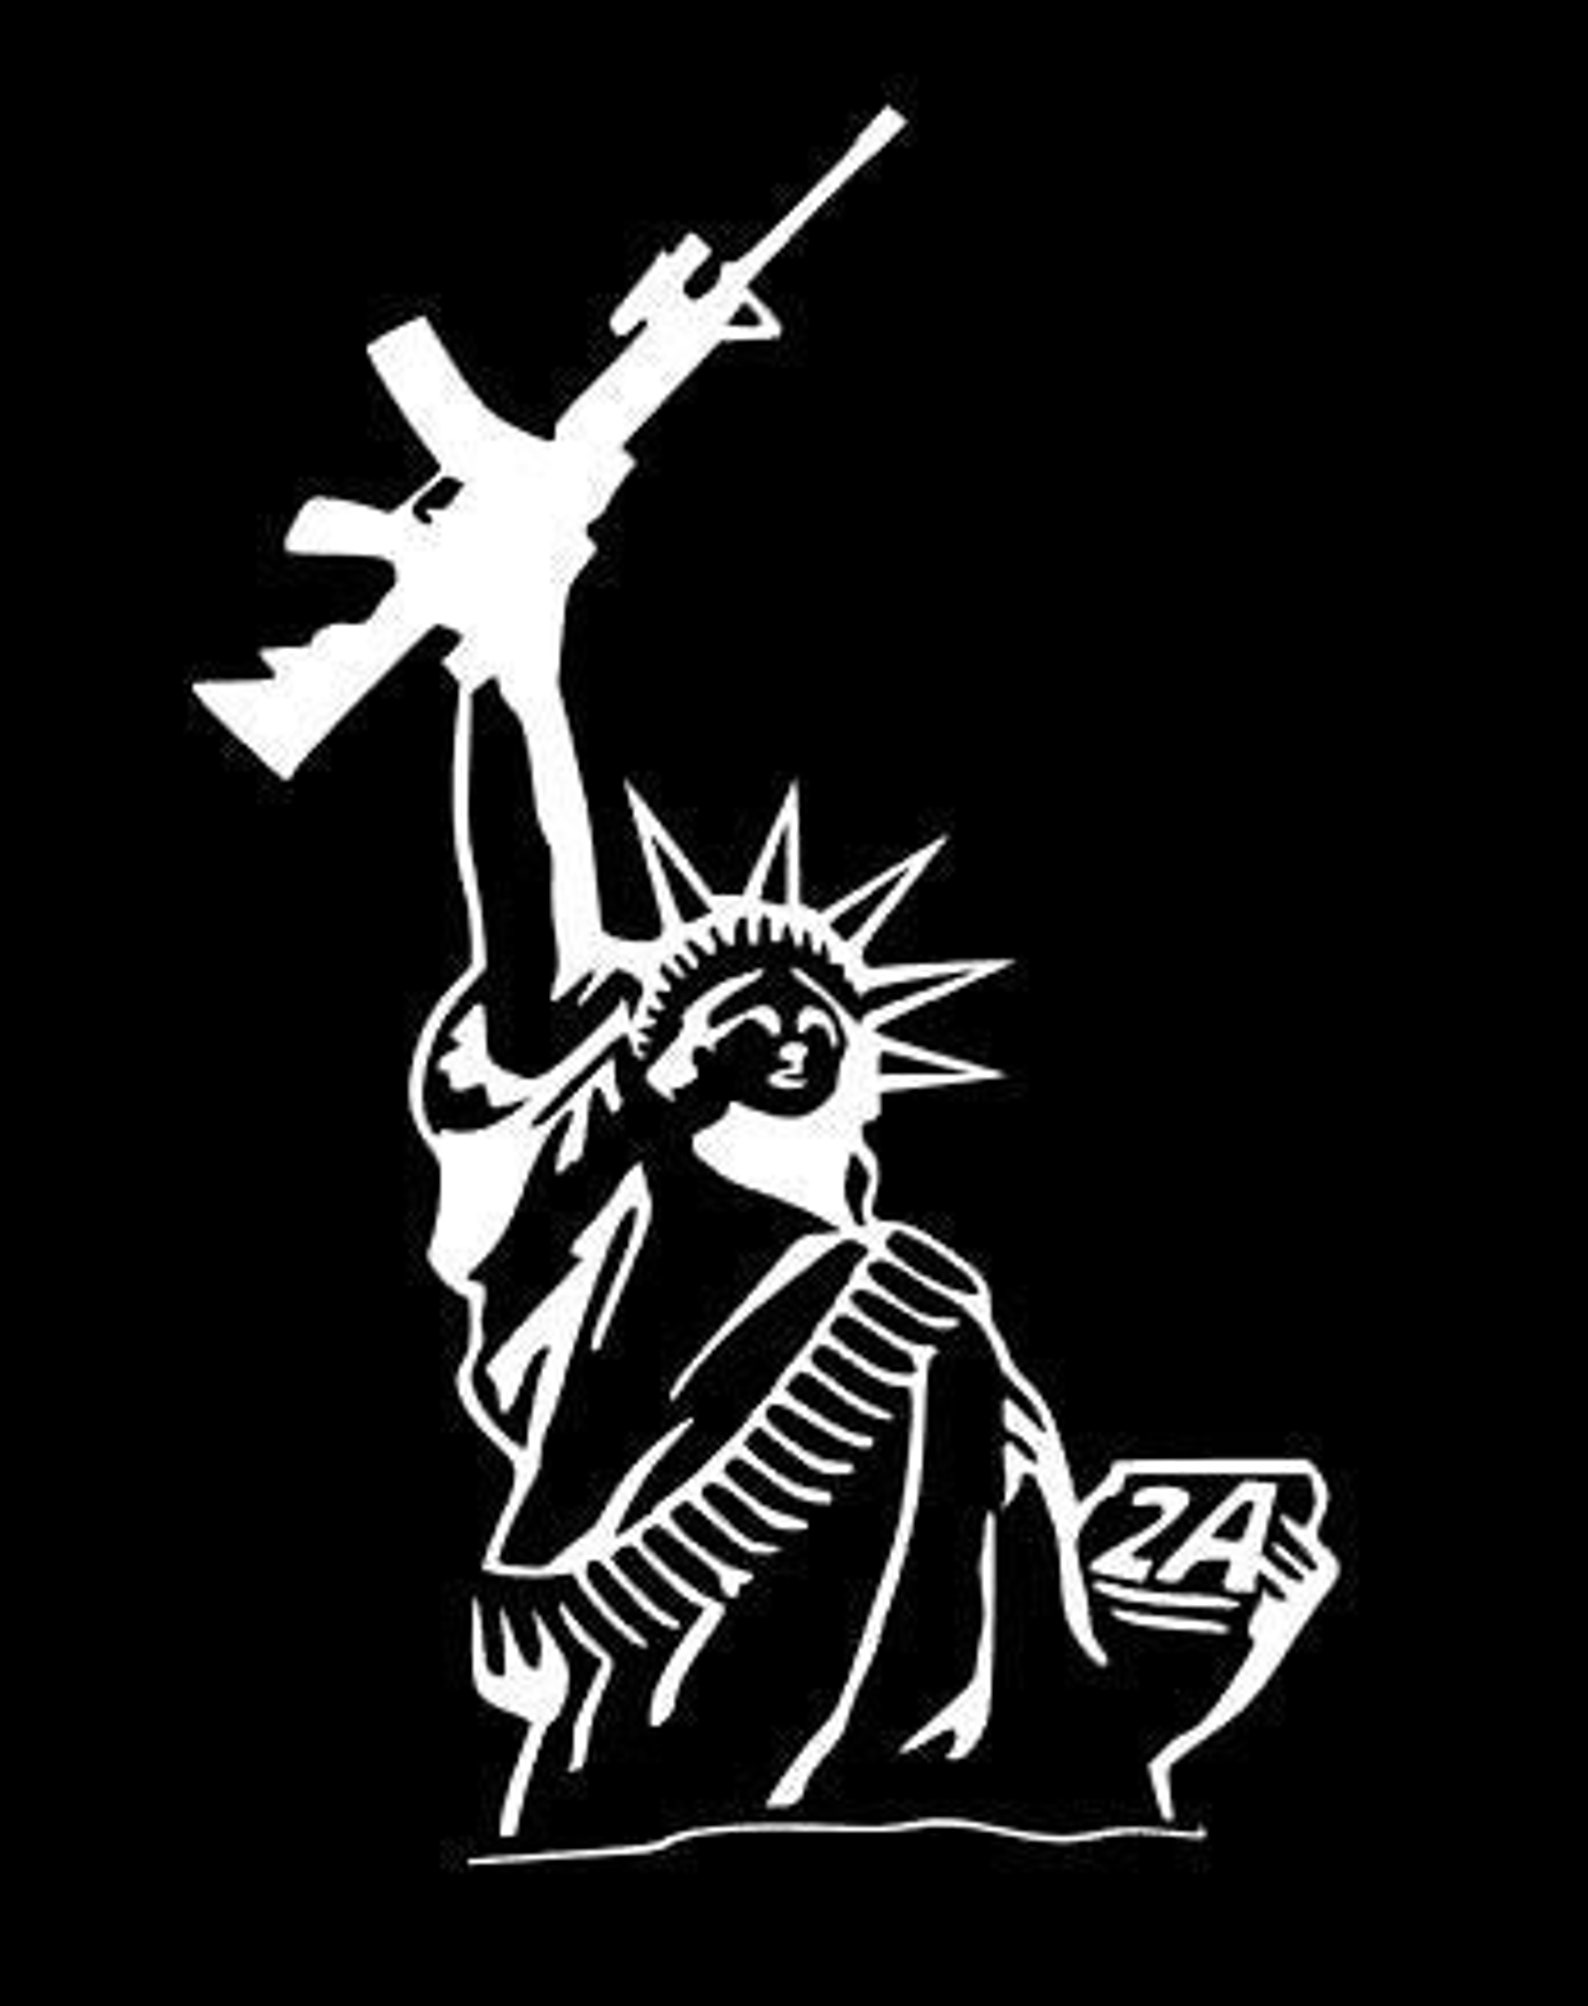 Lady freedom lady liberty. Статуя свободы с пистолетом. Обои на телефон для пацанов статуя свободы в виде дерзко девушки.